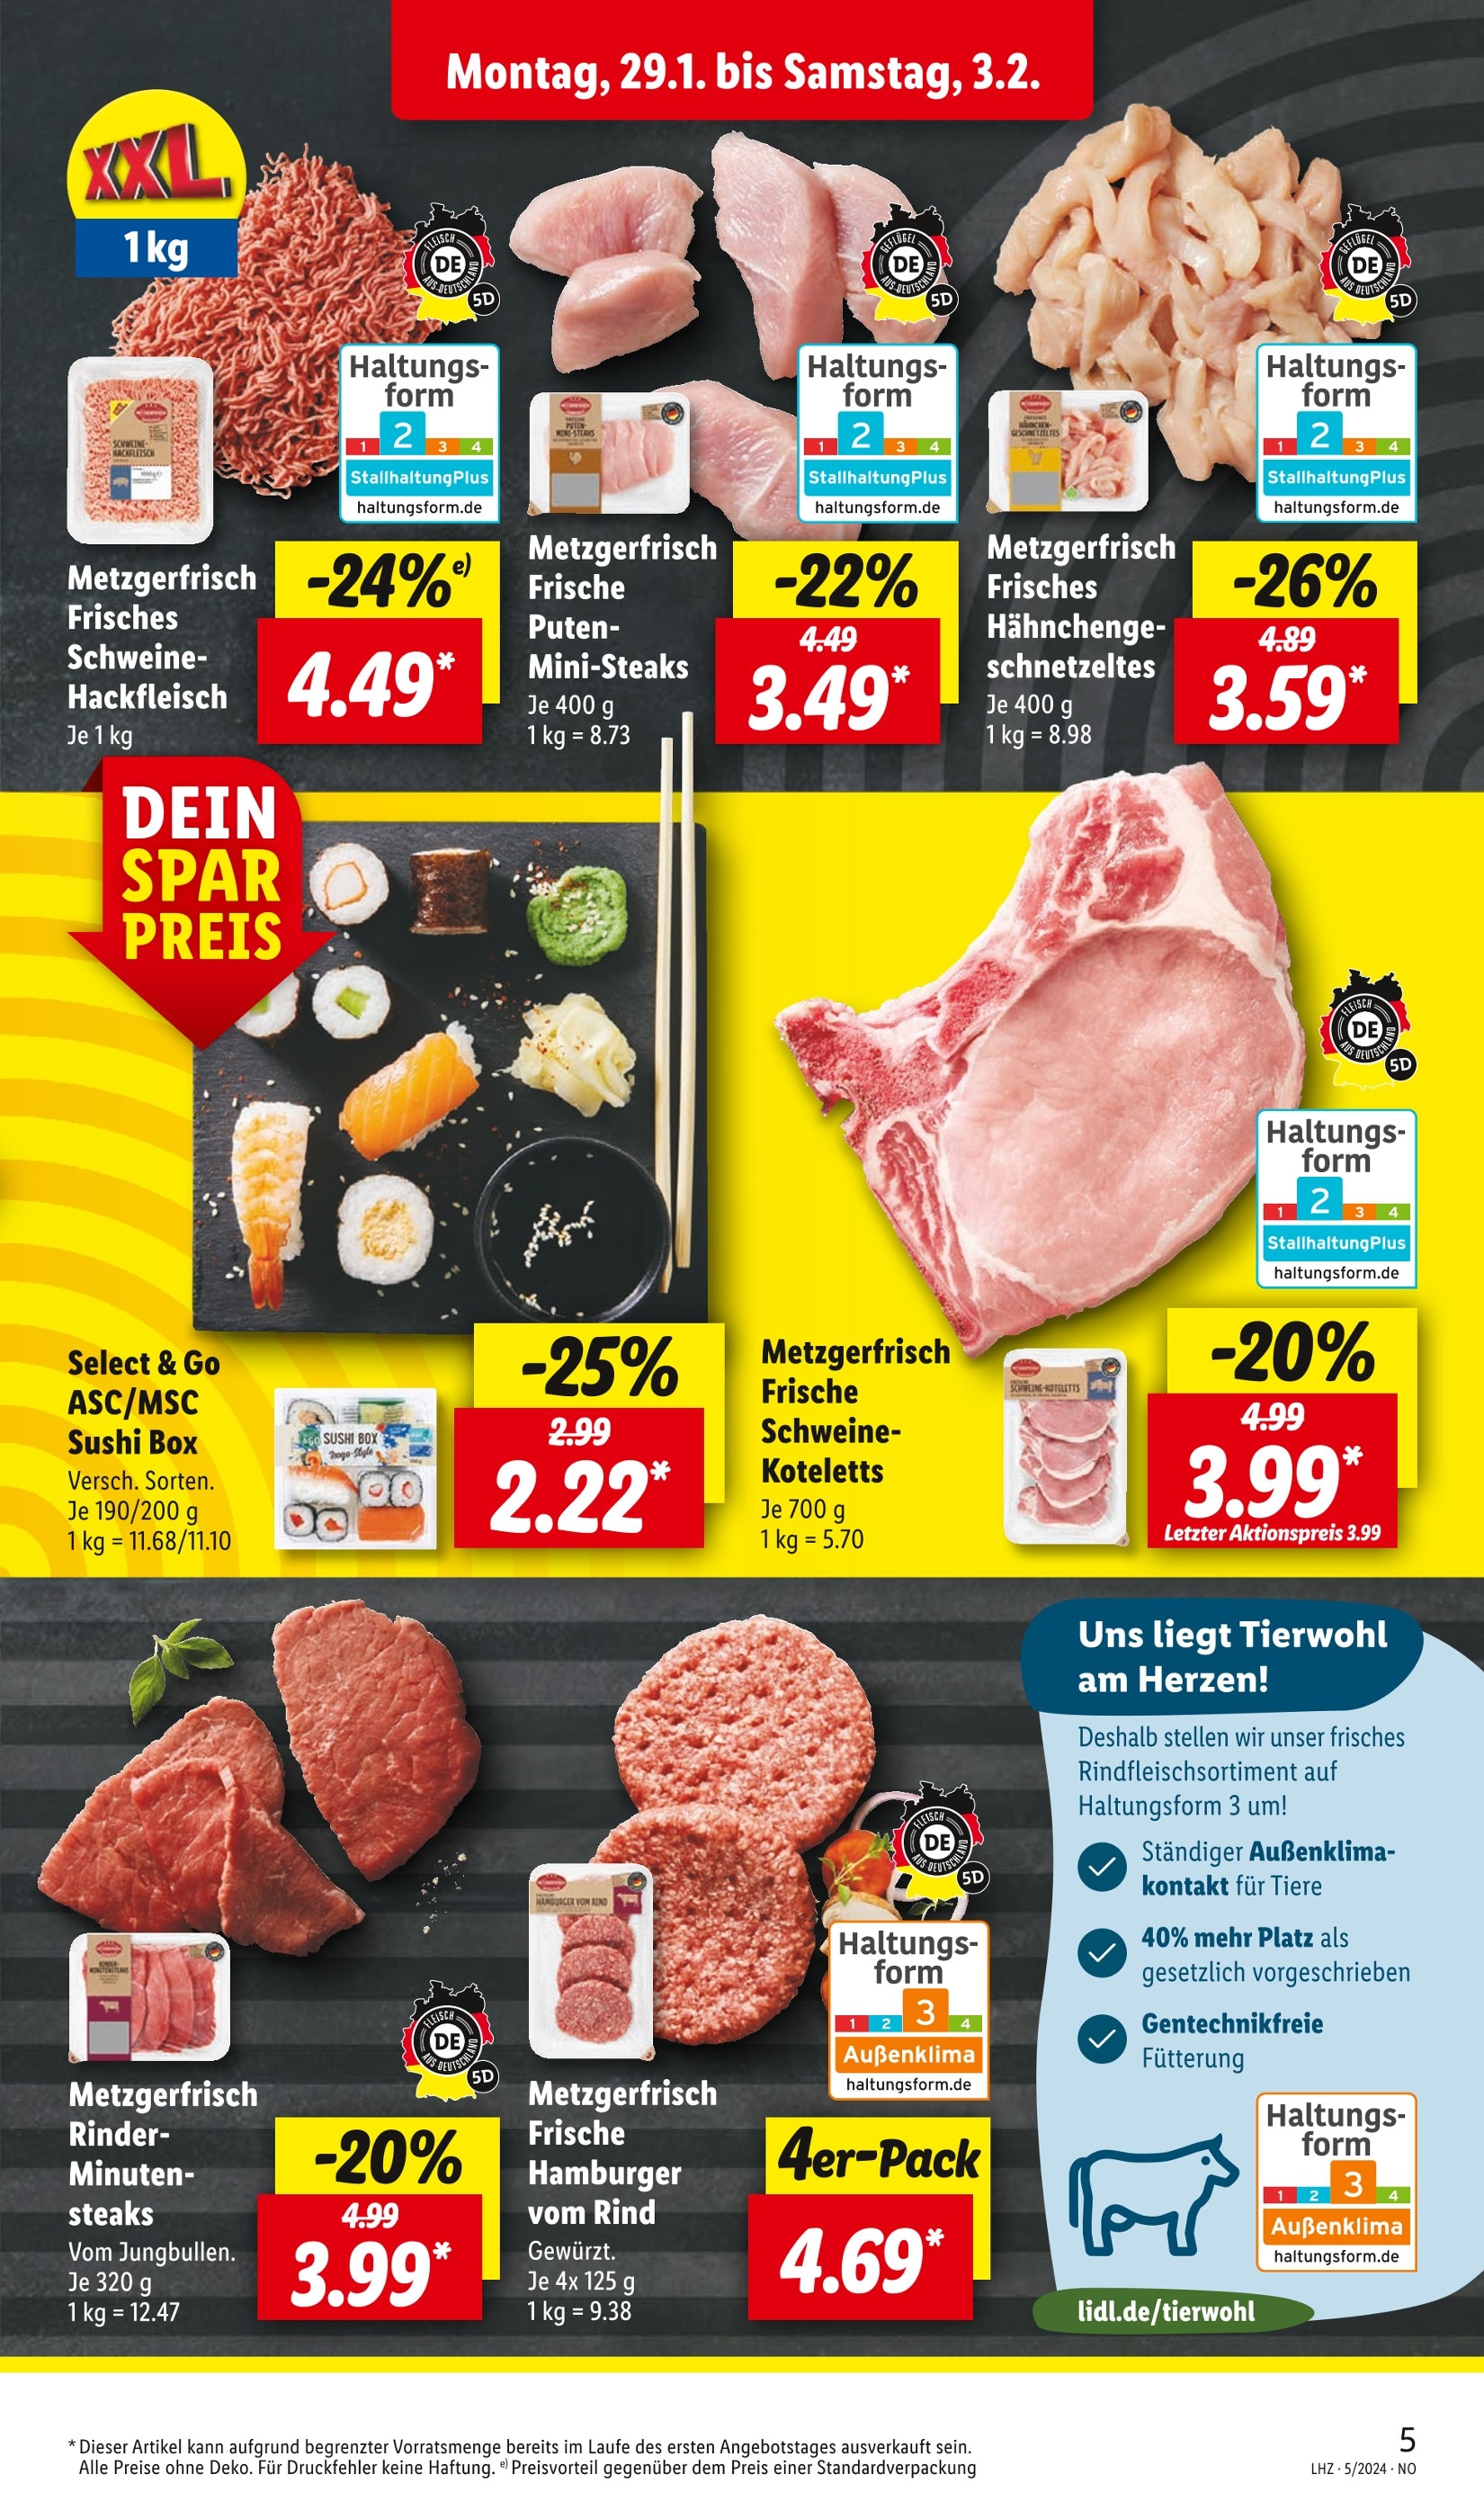 Braunschweig kaufen! Steak günstig - in jetzt 🔥 Angebote